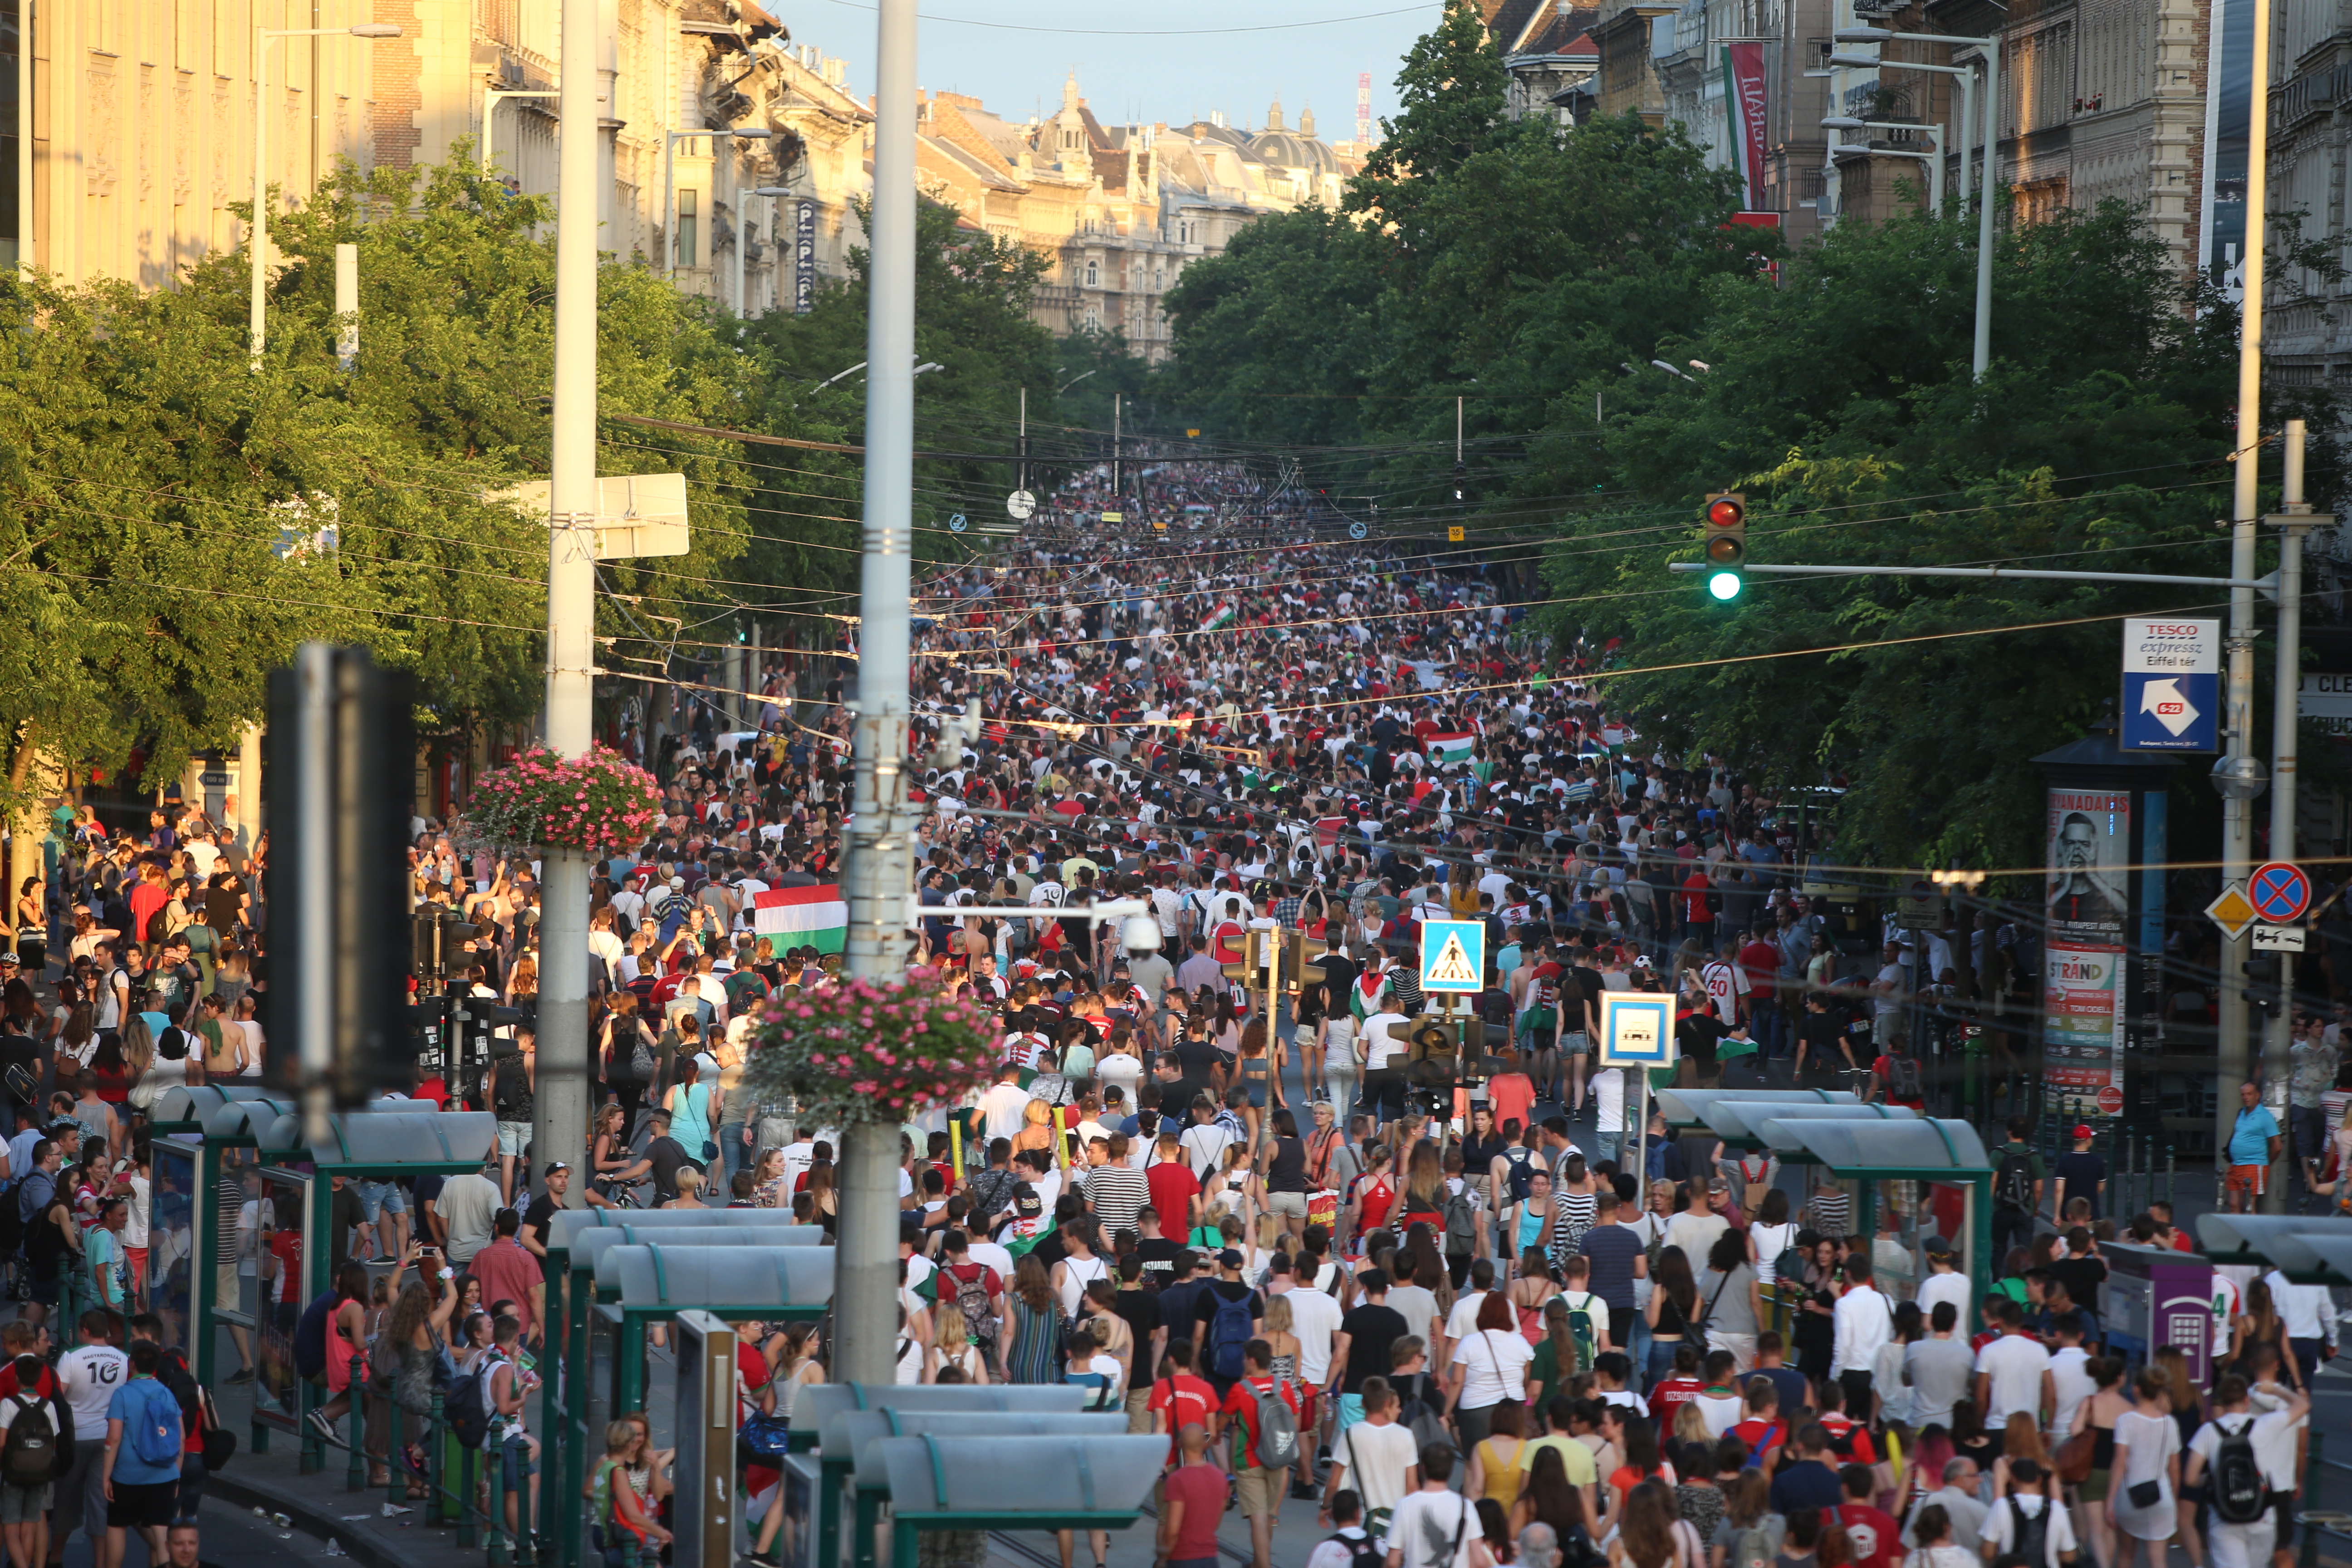 Őrjöngő tömeg ünnepelte a Nagykörúton a fociválogatottat - Fotók! - Blikk